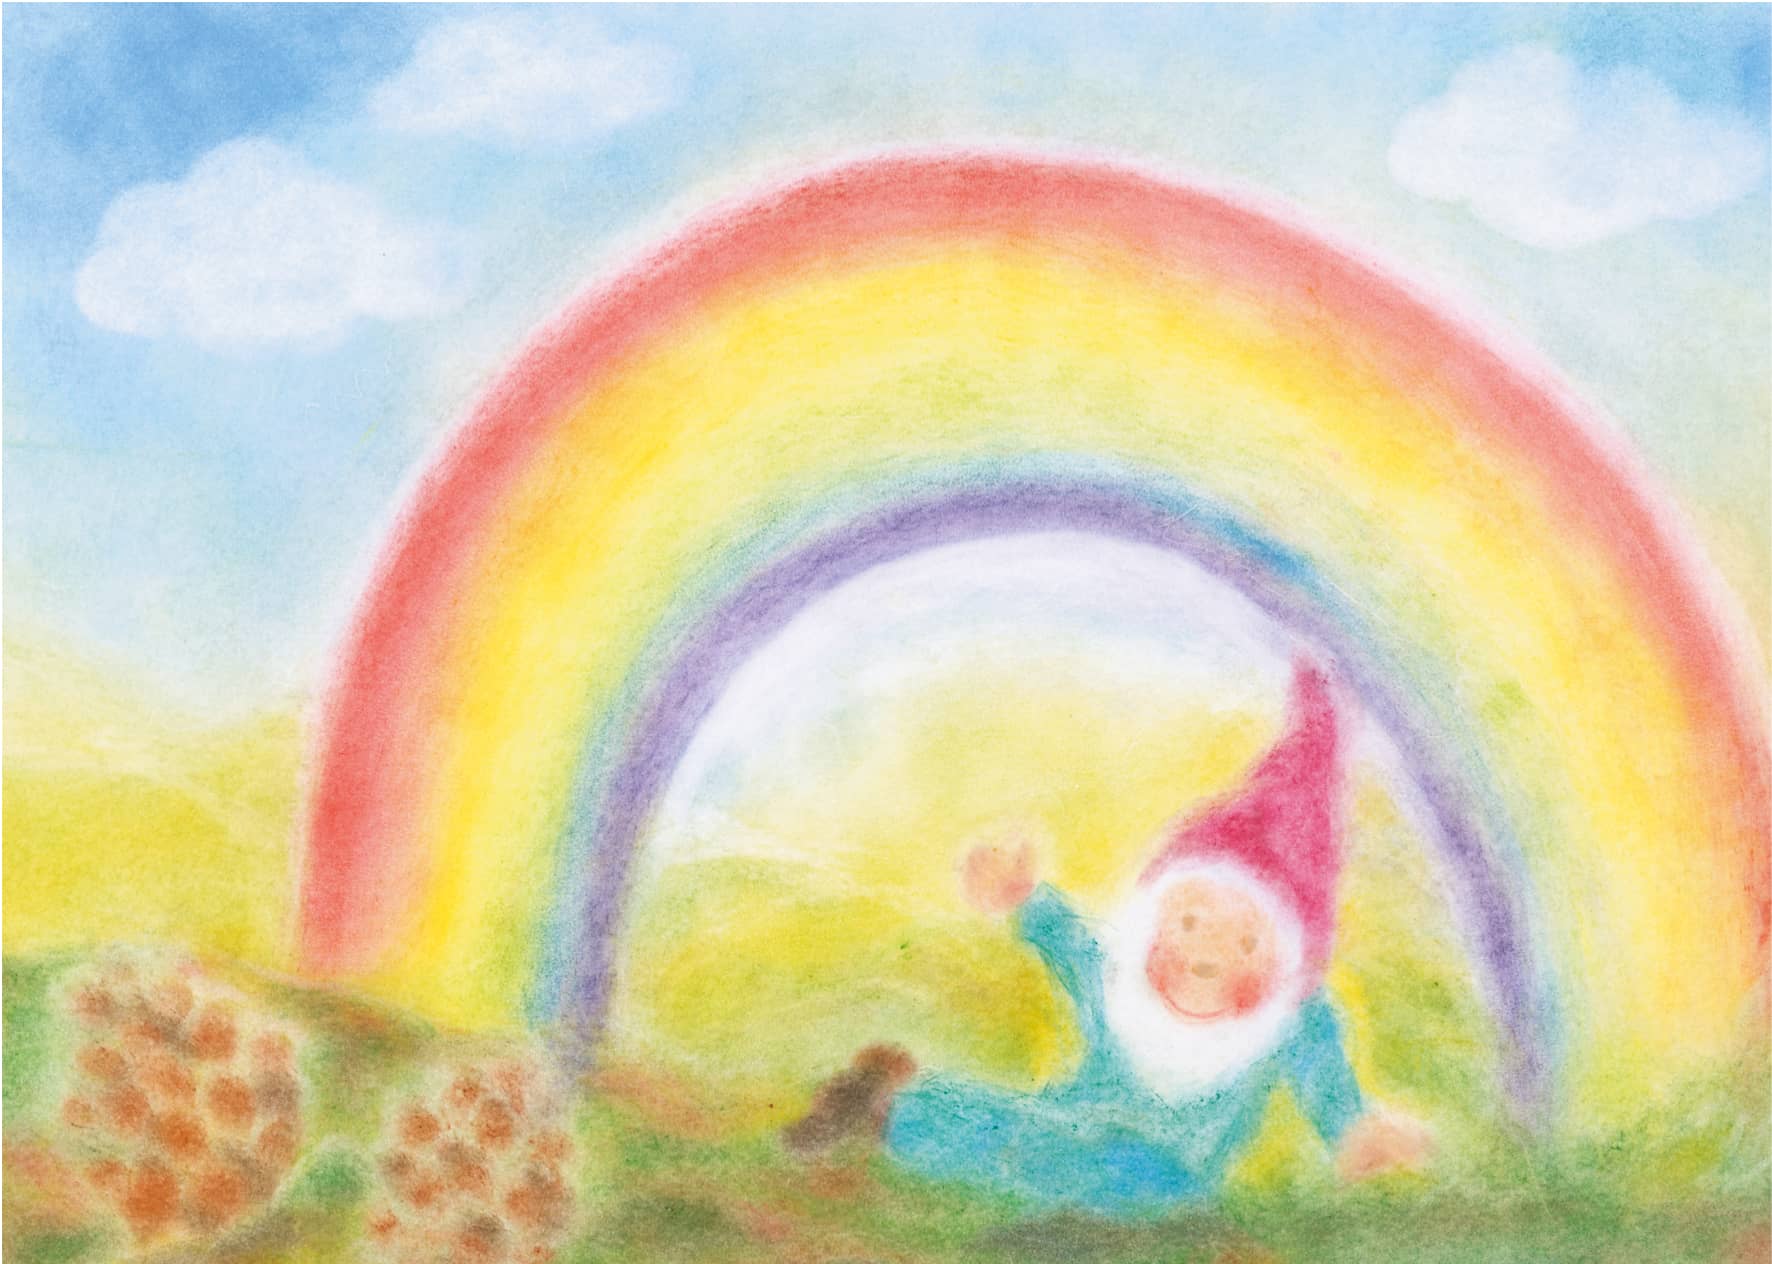 Seccorell Postkarte "Regenbogenzwerg" zeigt einen fröhlichen Zwerg unter einem strahlenden Regenbogen, kunstvoll dargestellt mit Seccorell-Farben.